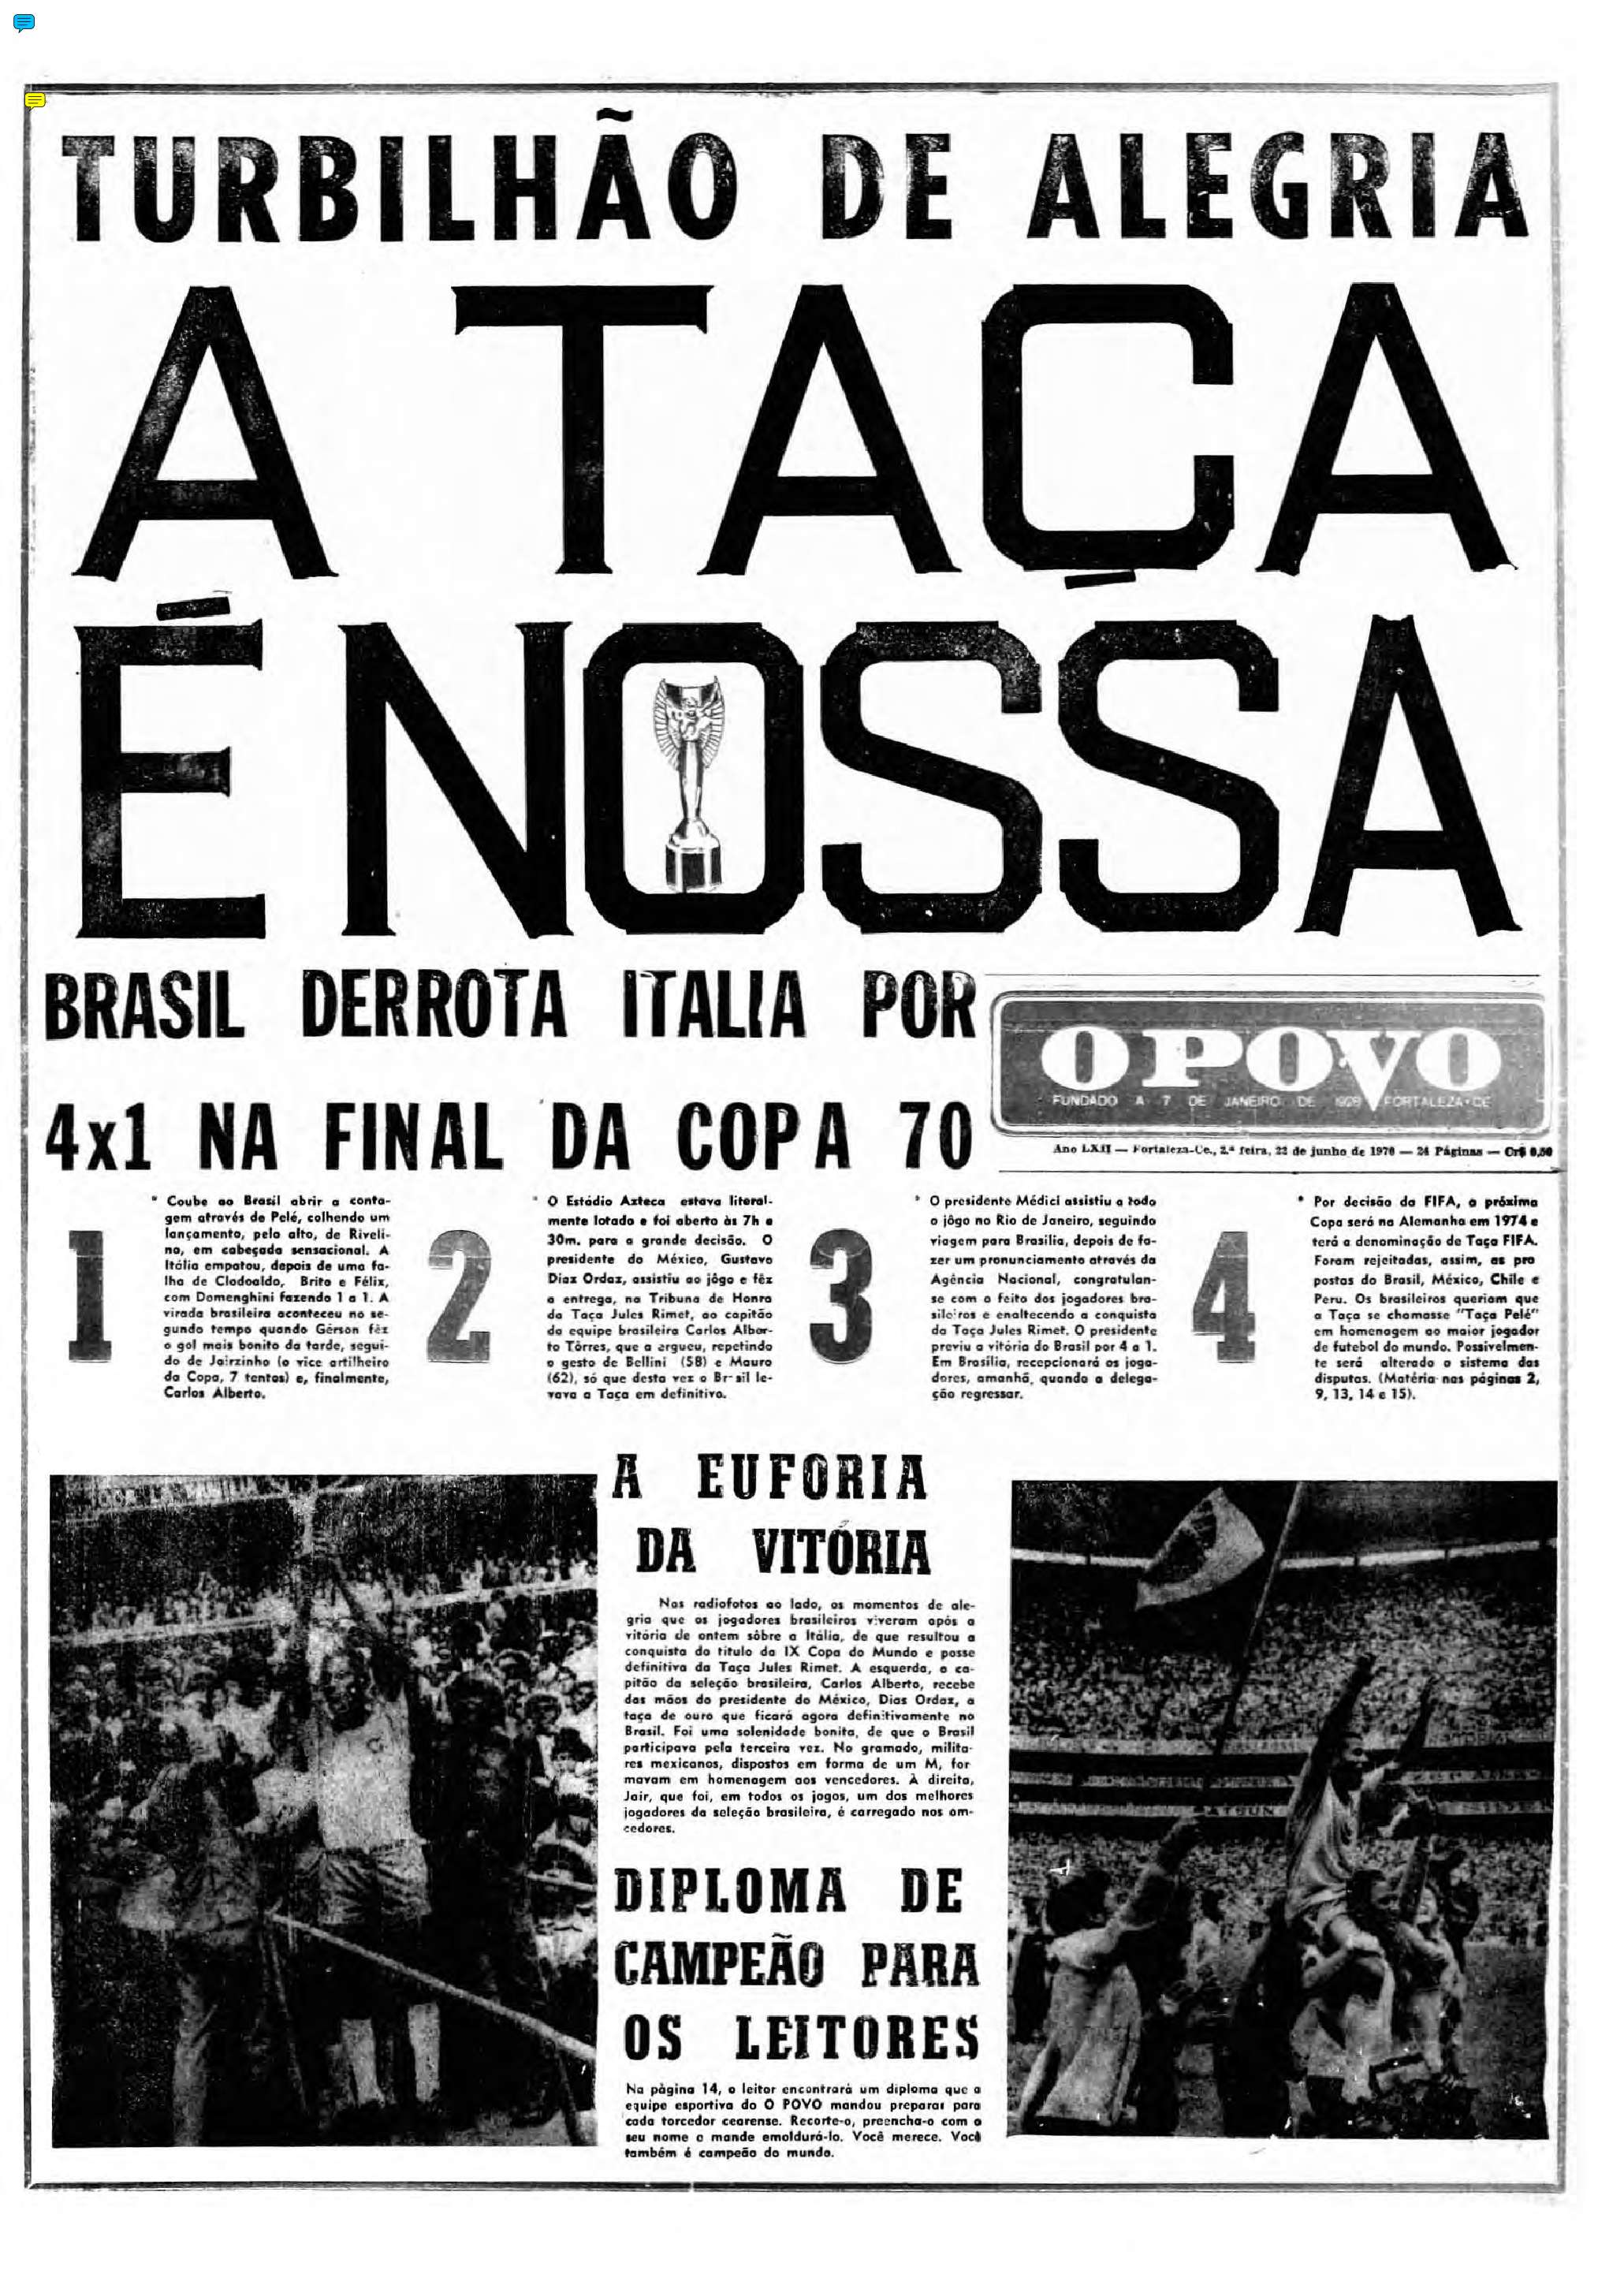 22 de junho de 1970 - Capa do O POVO do tri da seleção brasileira na Copa do Mundo (Foto: Acervo O POVO)